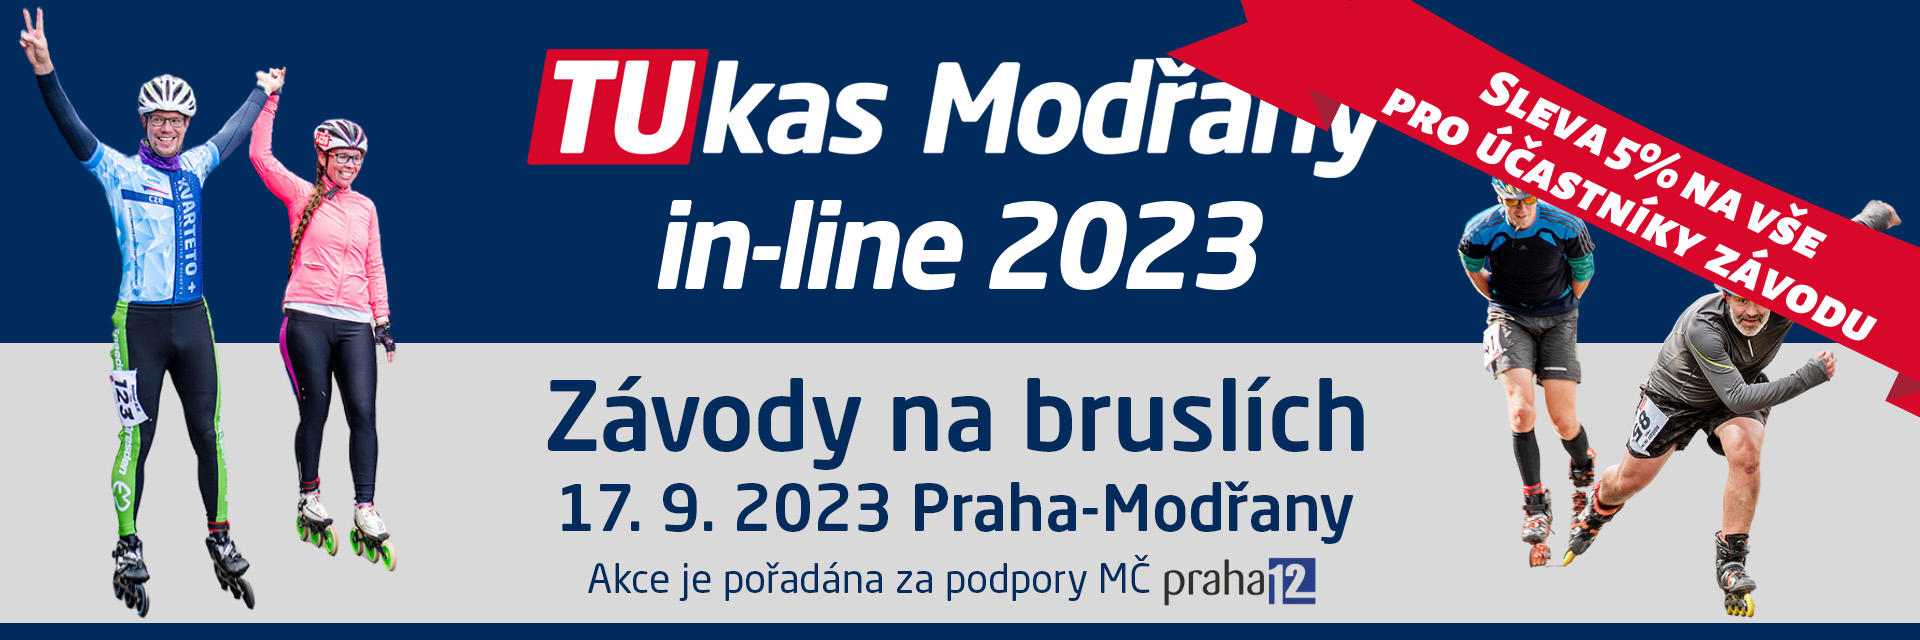 Zvu vás na závod v Praze - Modřany Inline 2023 - 10 a 21 km